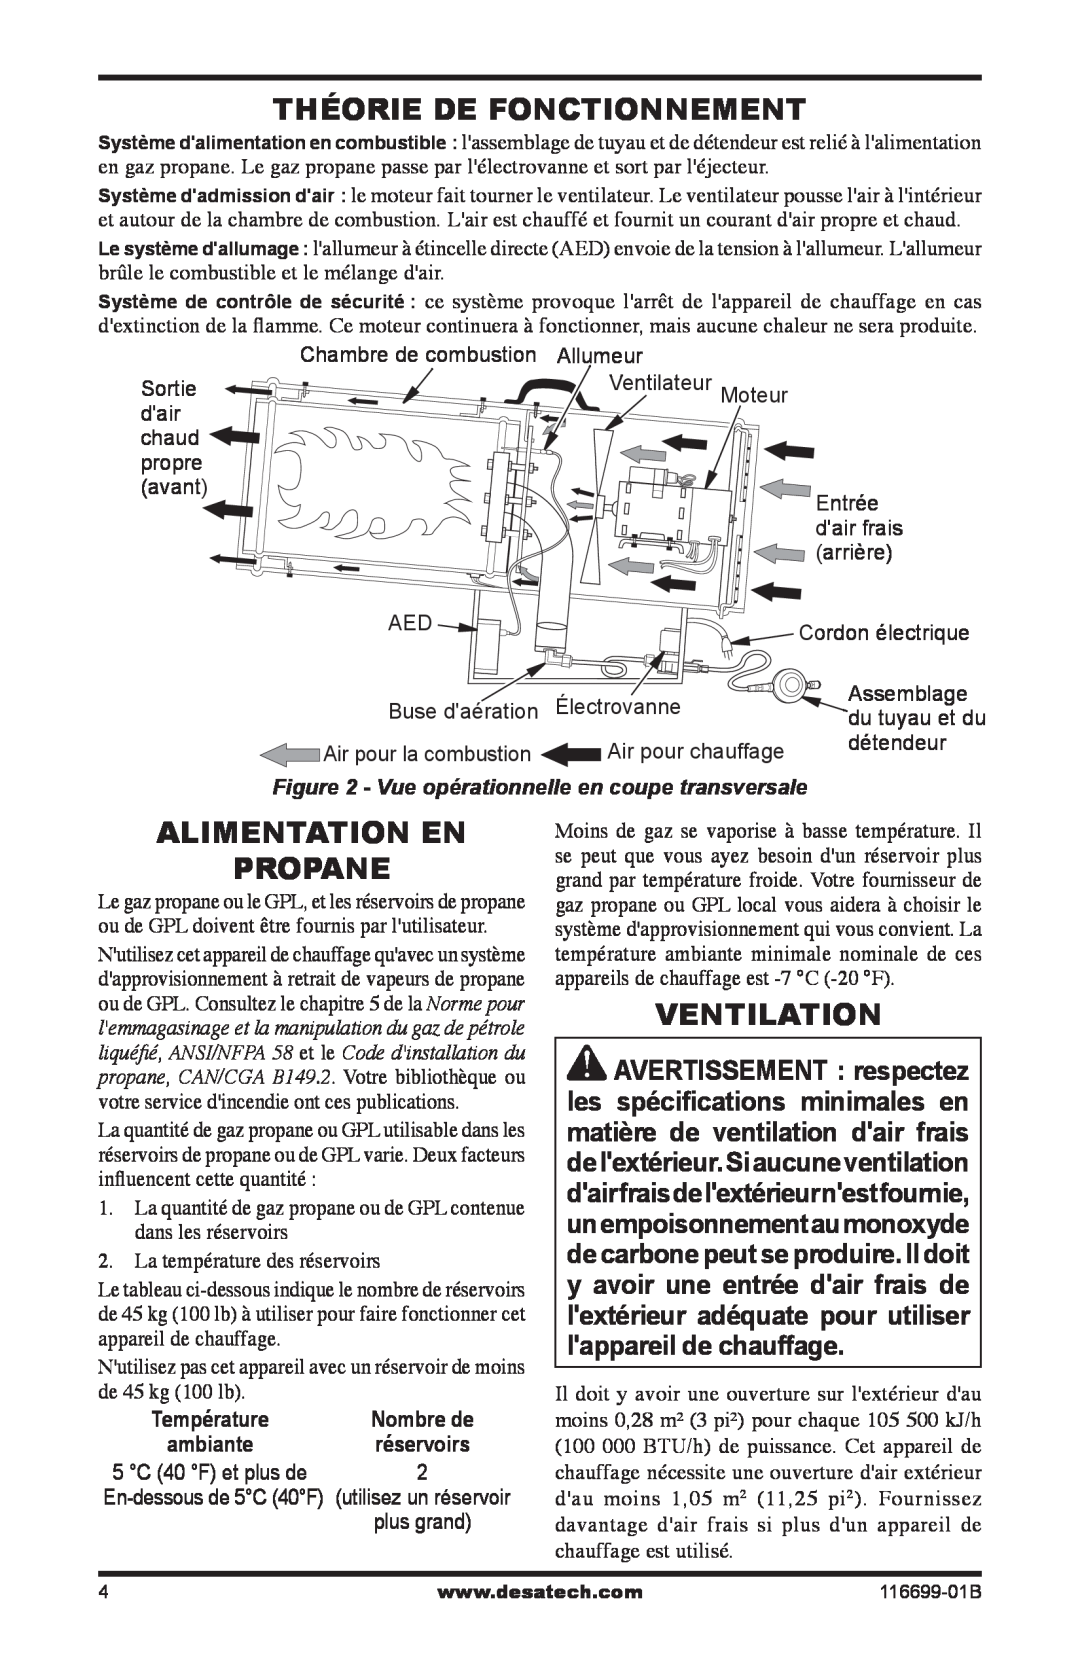 Desa SBLP375AT, 375-F owner manual Théorie De Fonctionnement, Alimentation En Propane, Ventilation 